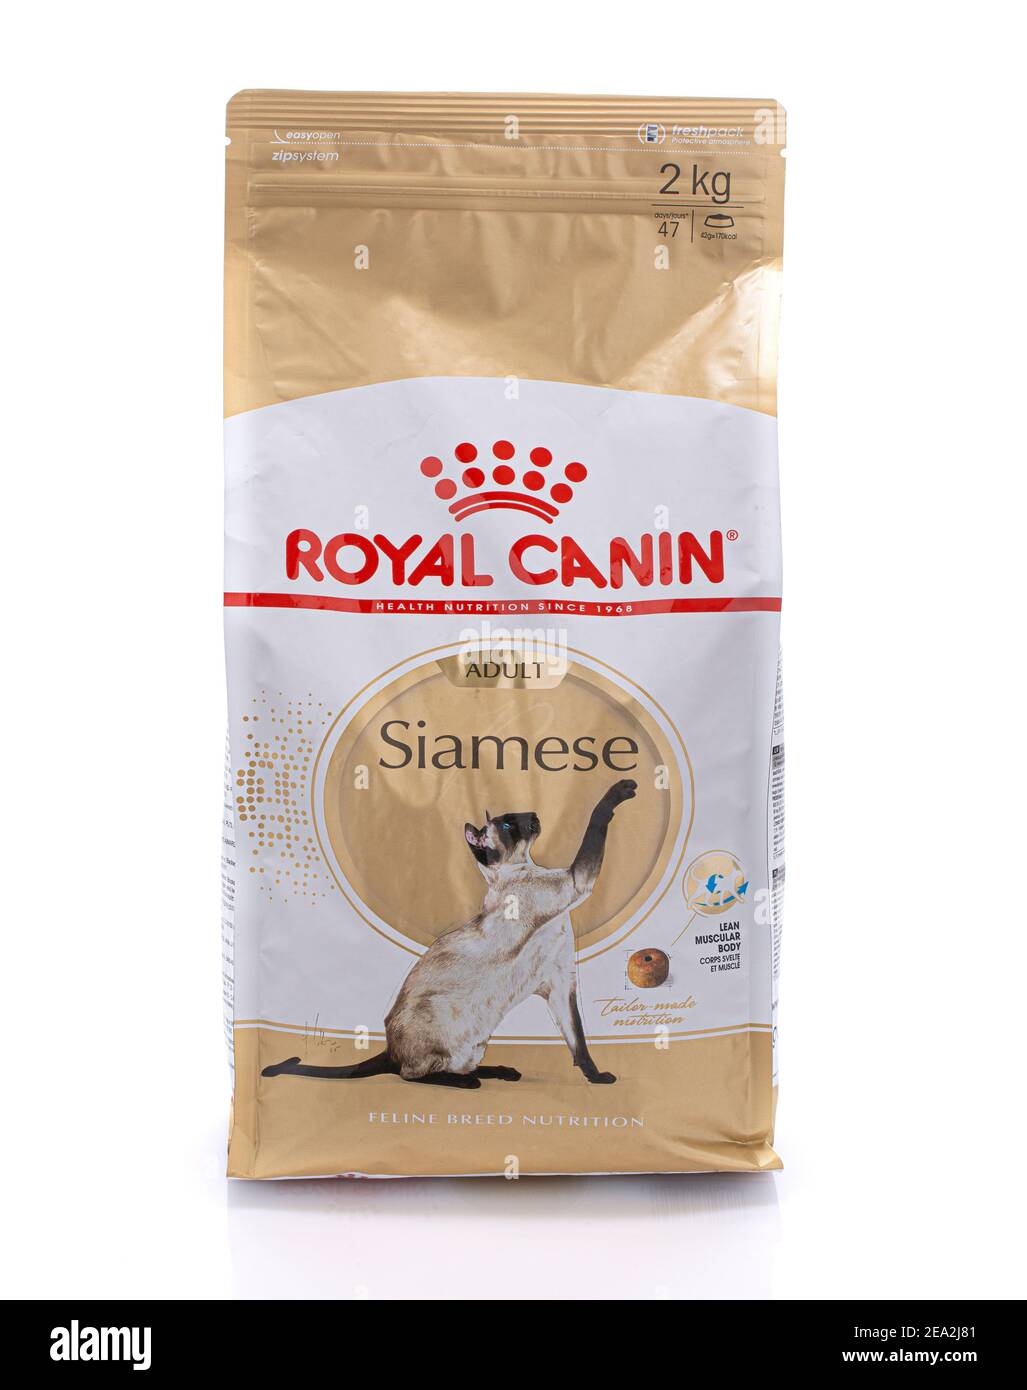 SWINDON, Regno Unito - 2 FEBBRAIO 2021: Pacchetto di cibo gatto Royal Canin Siamese Adult Feline Nutrition su sfondo bianco Foto Stock